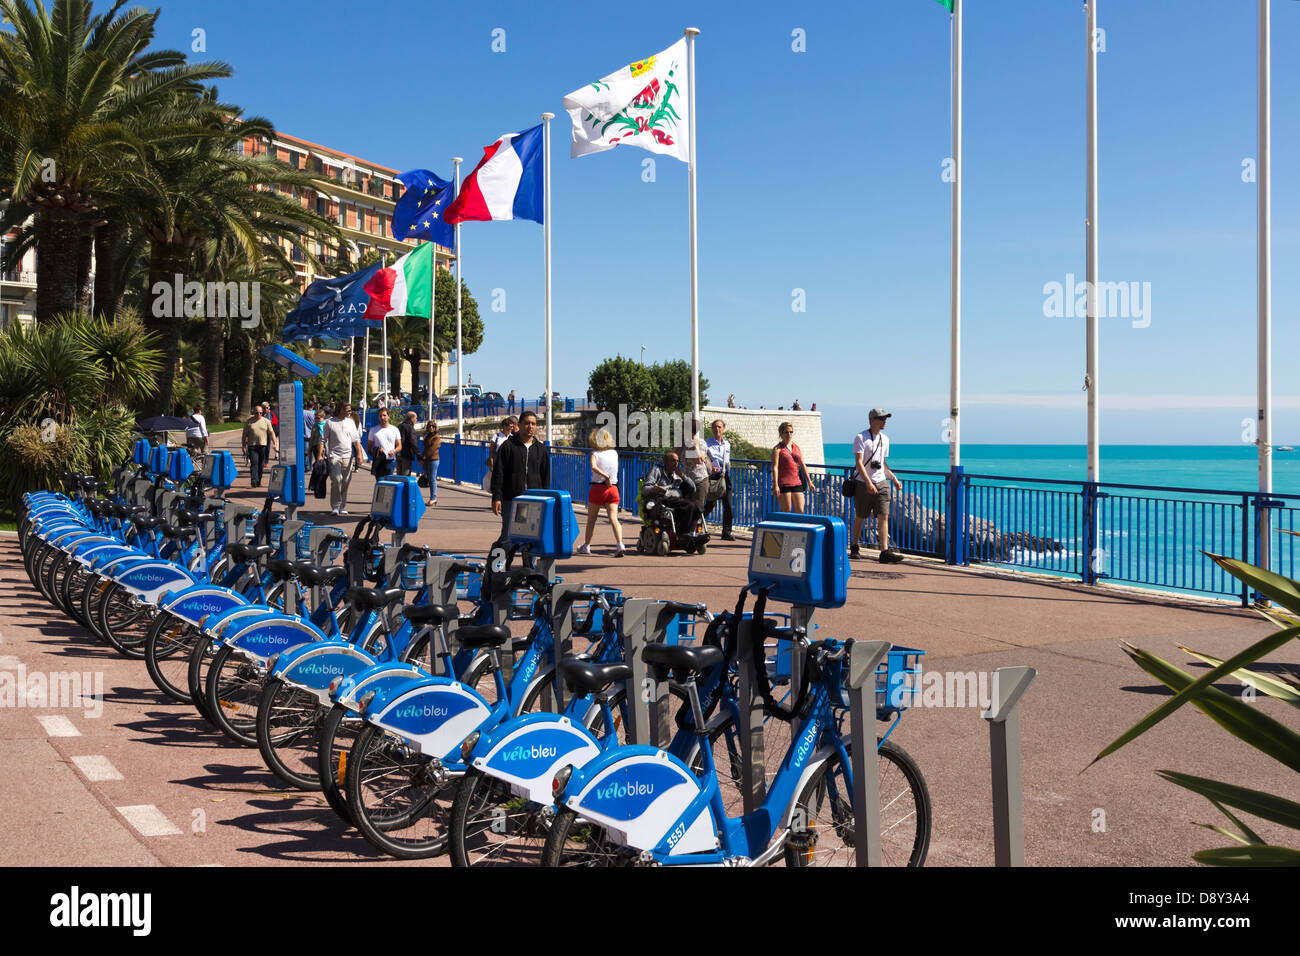 Velo Bleu Rental Bikes at Quai des Etats Promenade Nice Provence France Stock Photo